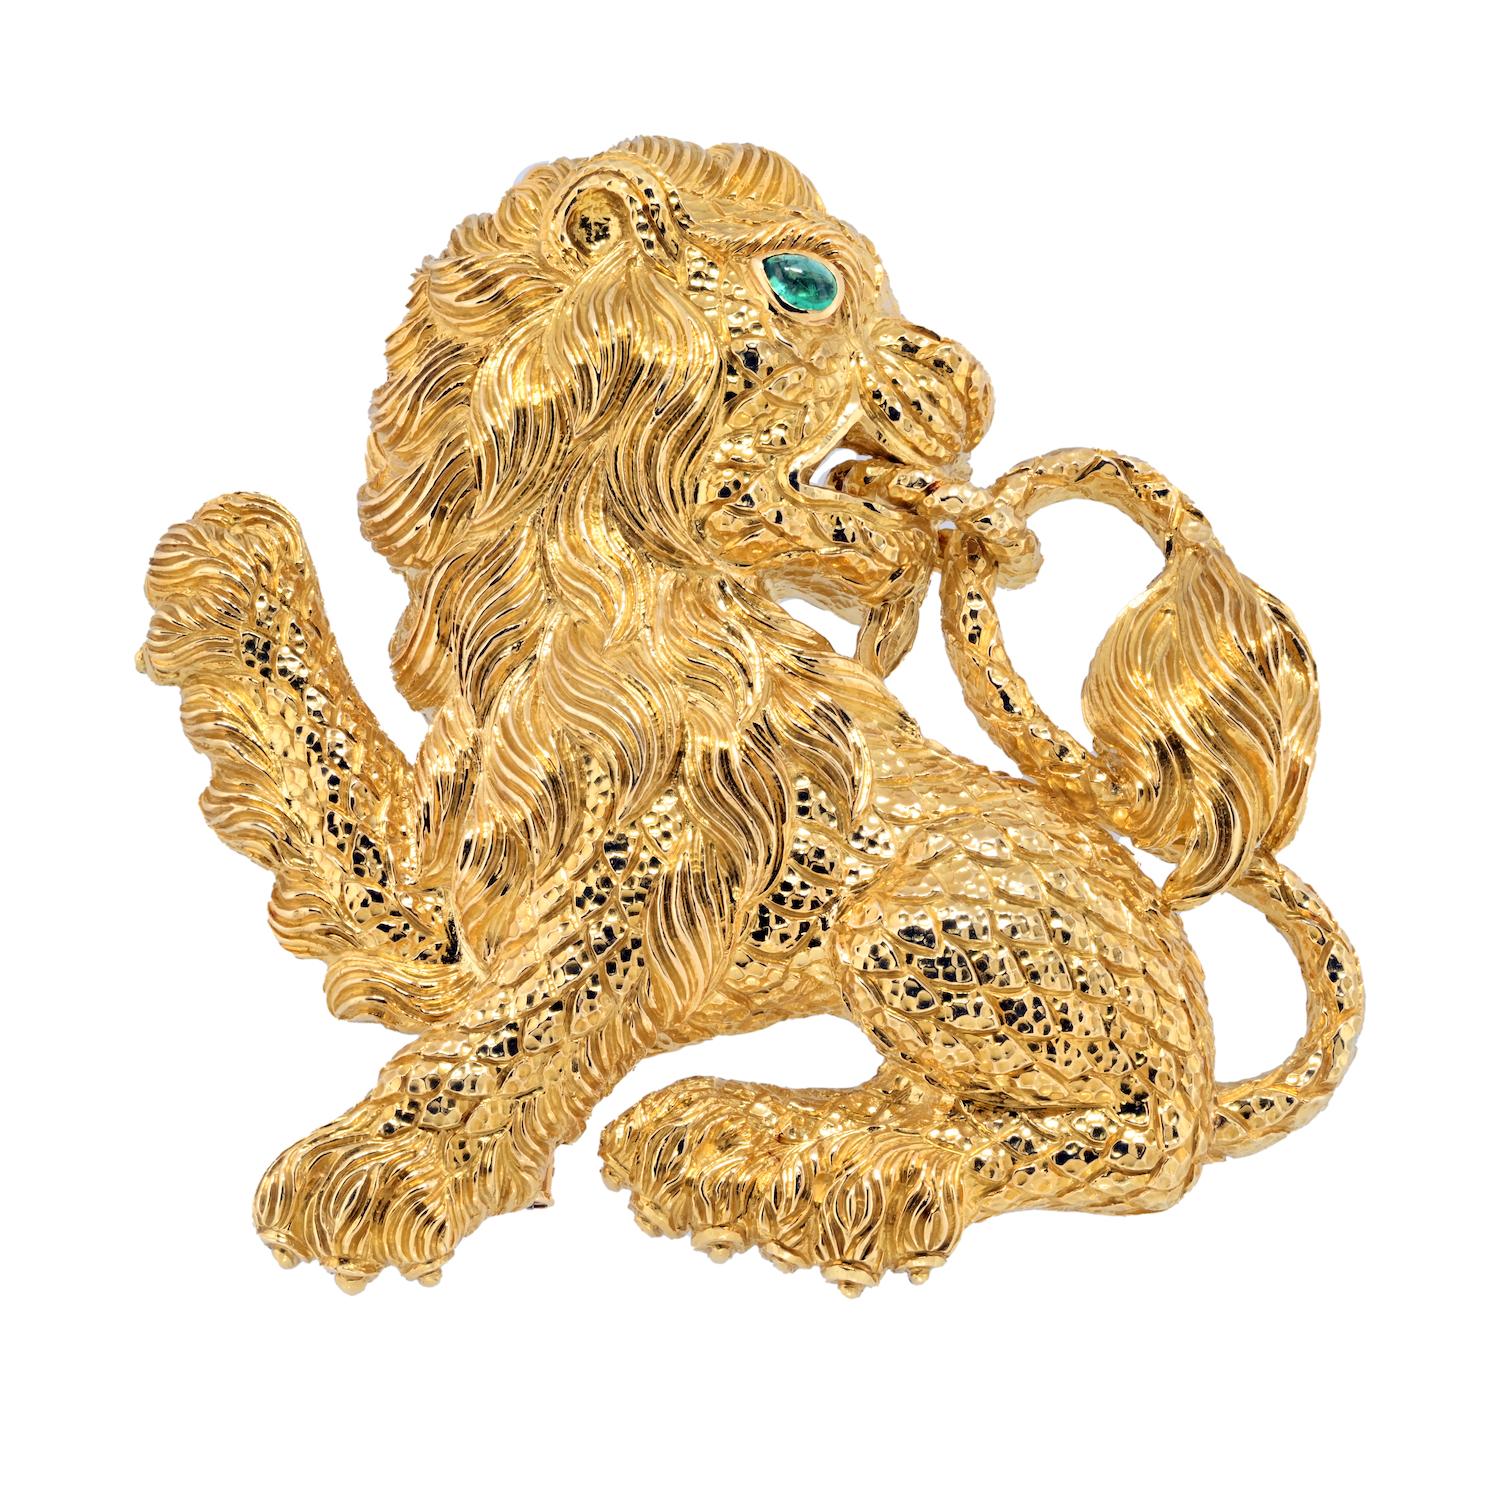 Zelebrieren Sie die königliche Anziehungskraft des Dschungels mit der David Webb Löwenbrosche aus 18-karätigem Gelbgold, einem fesselnden Stück, das Raffinesse und aussagekräftiges Design nahtlos miteinander verbindet. Diese exquisite Brosche ist